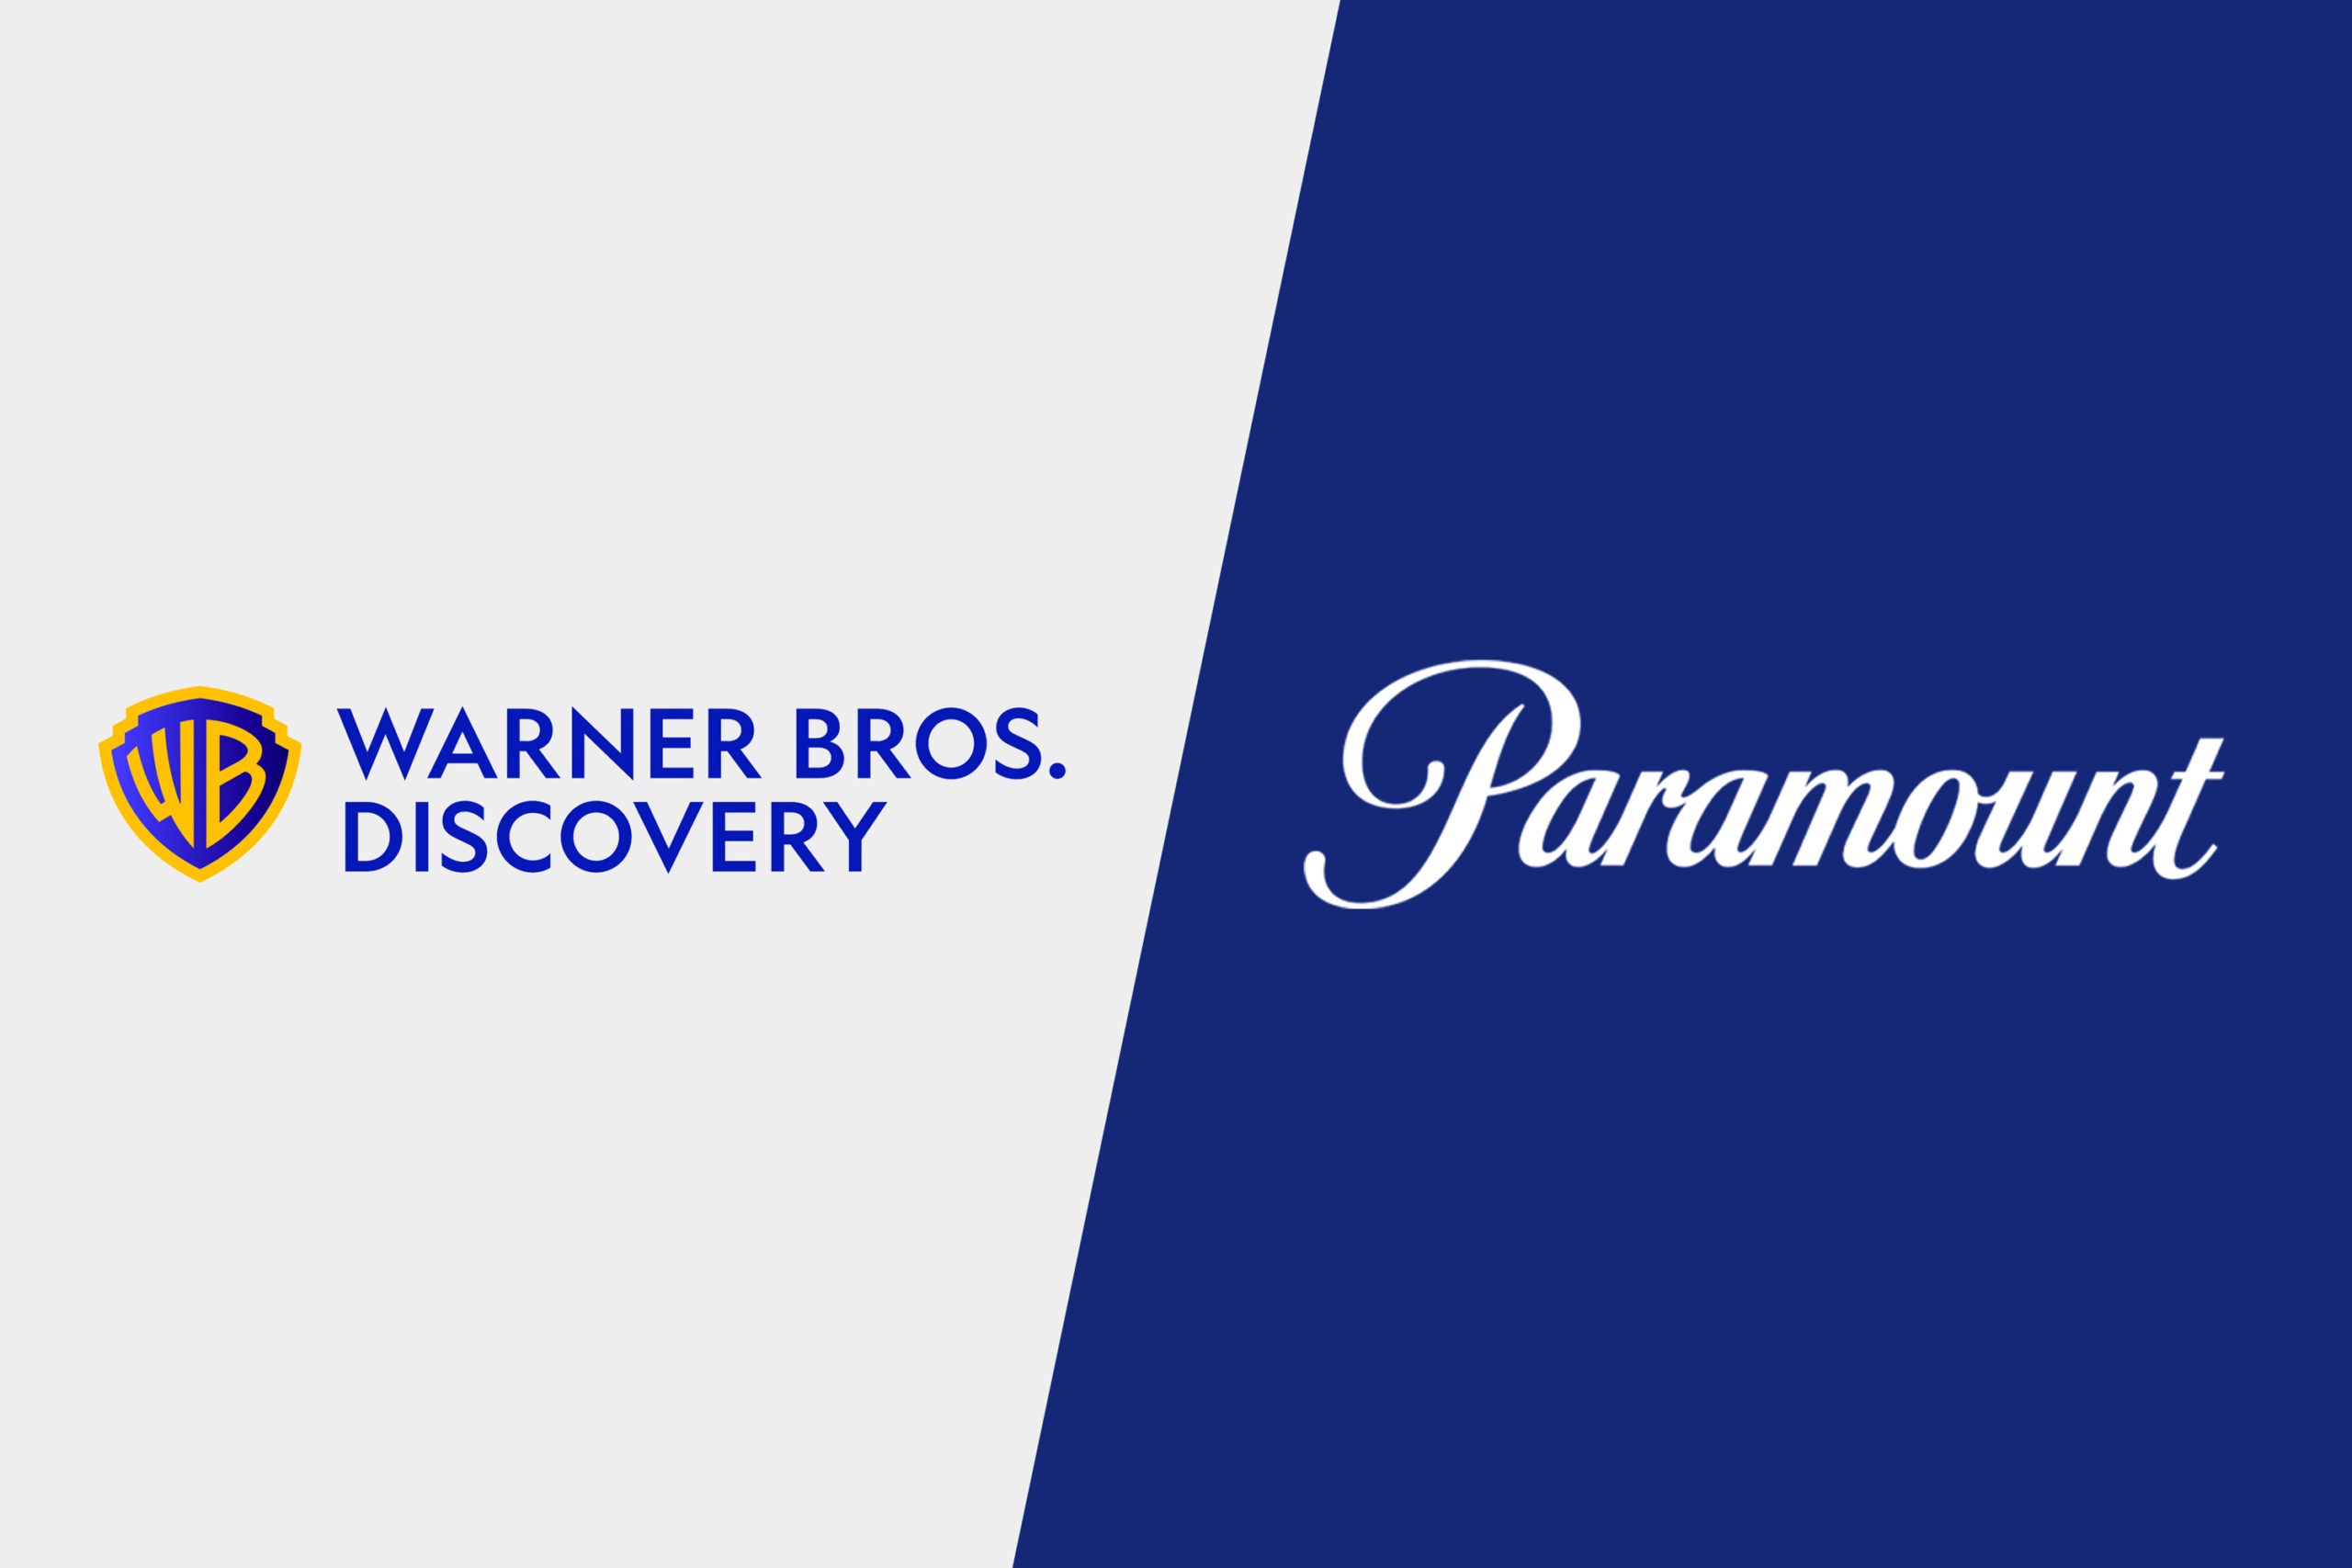 Warner Bros Paramount